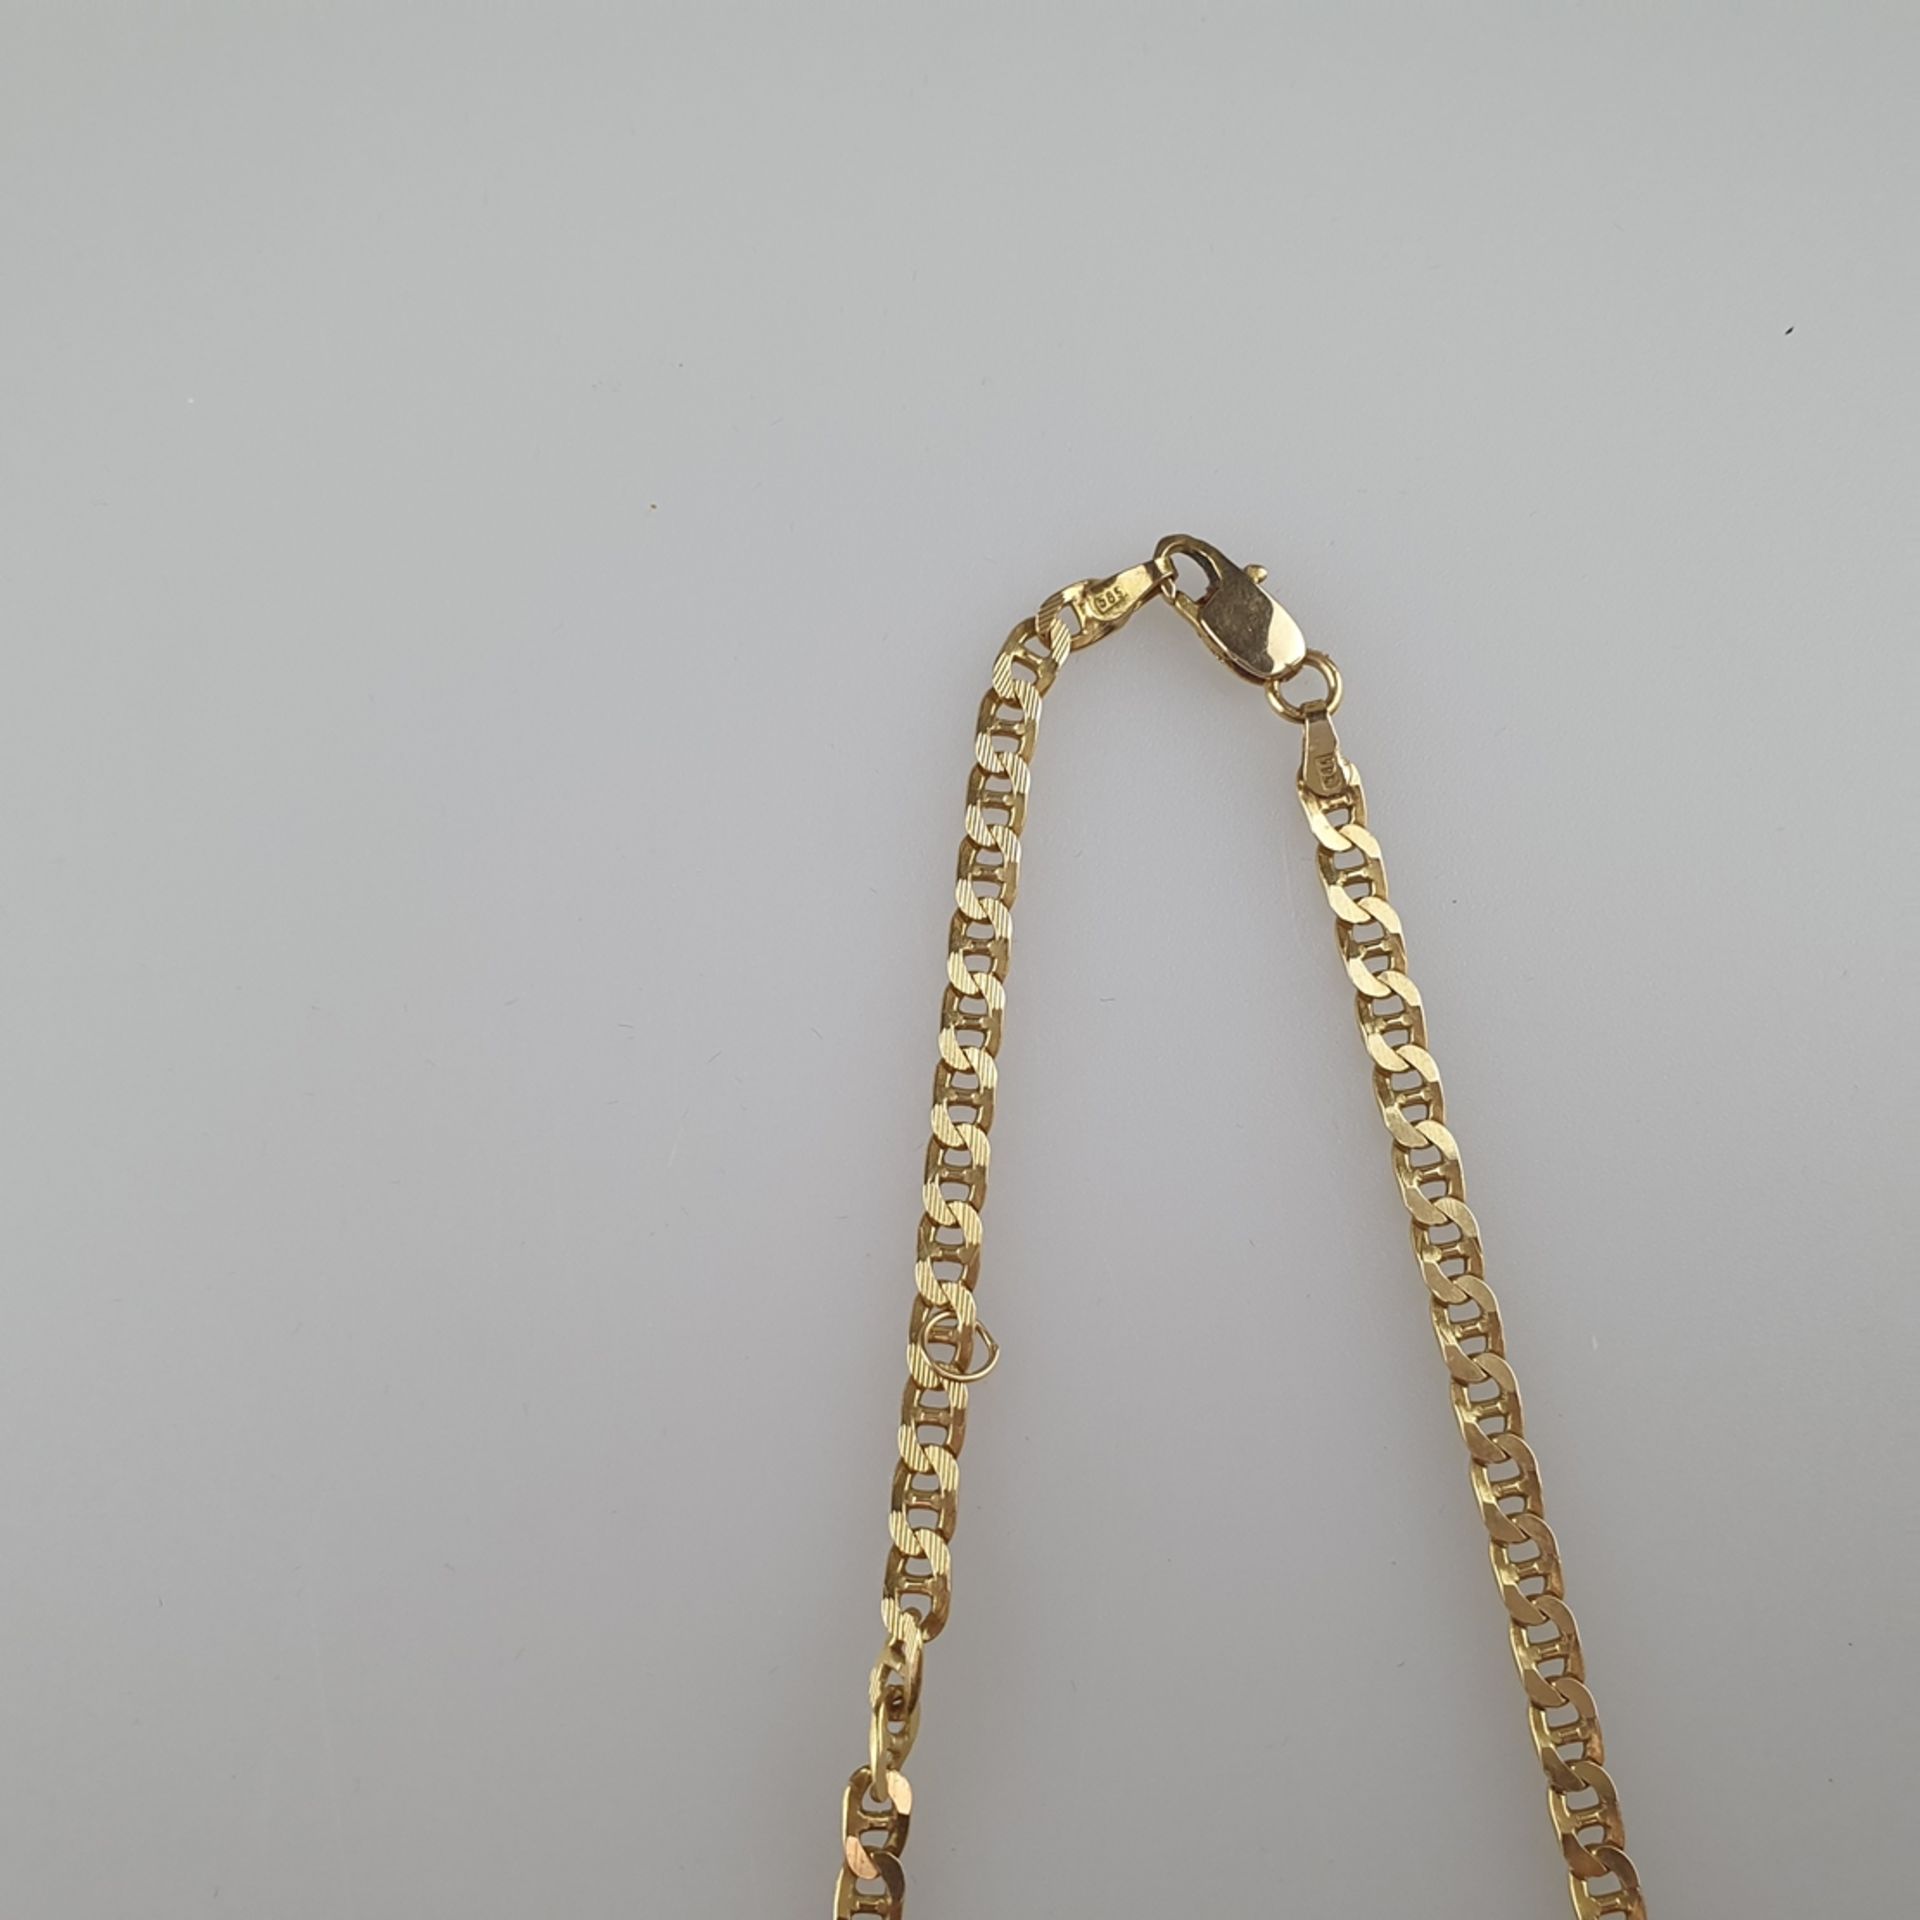 Goldkette - Gelbgold 585/000, gepunzt, feine Gliederkette mit Karabinerverschluss, teils geriffelt, - Bild 3 aus 3